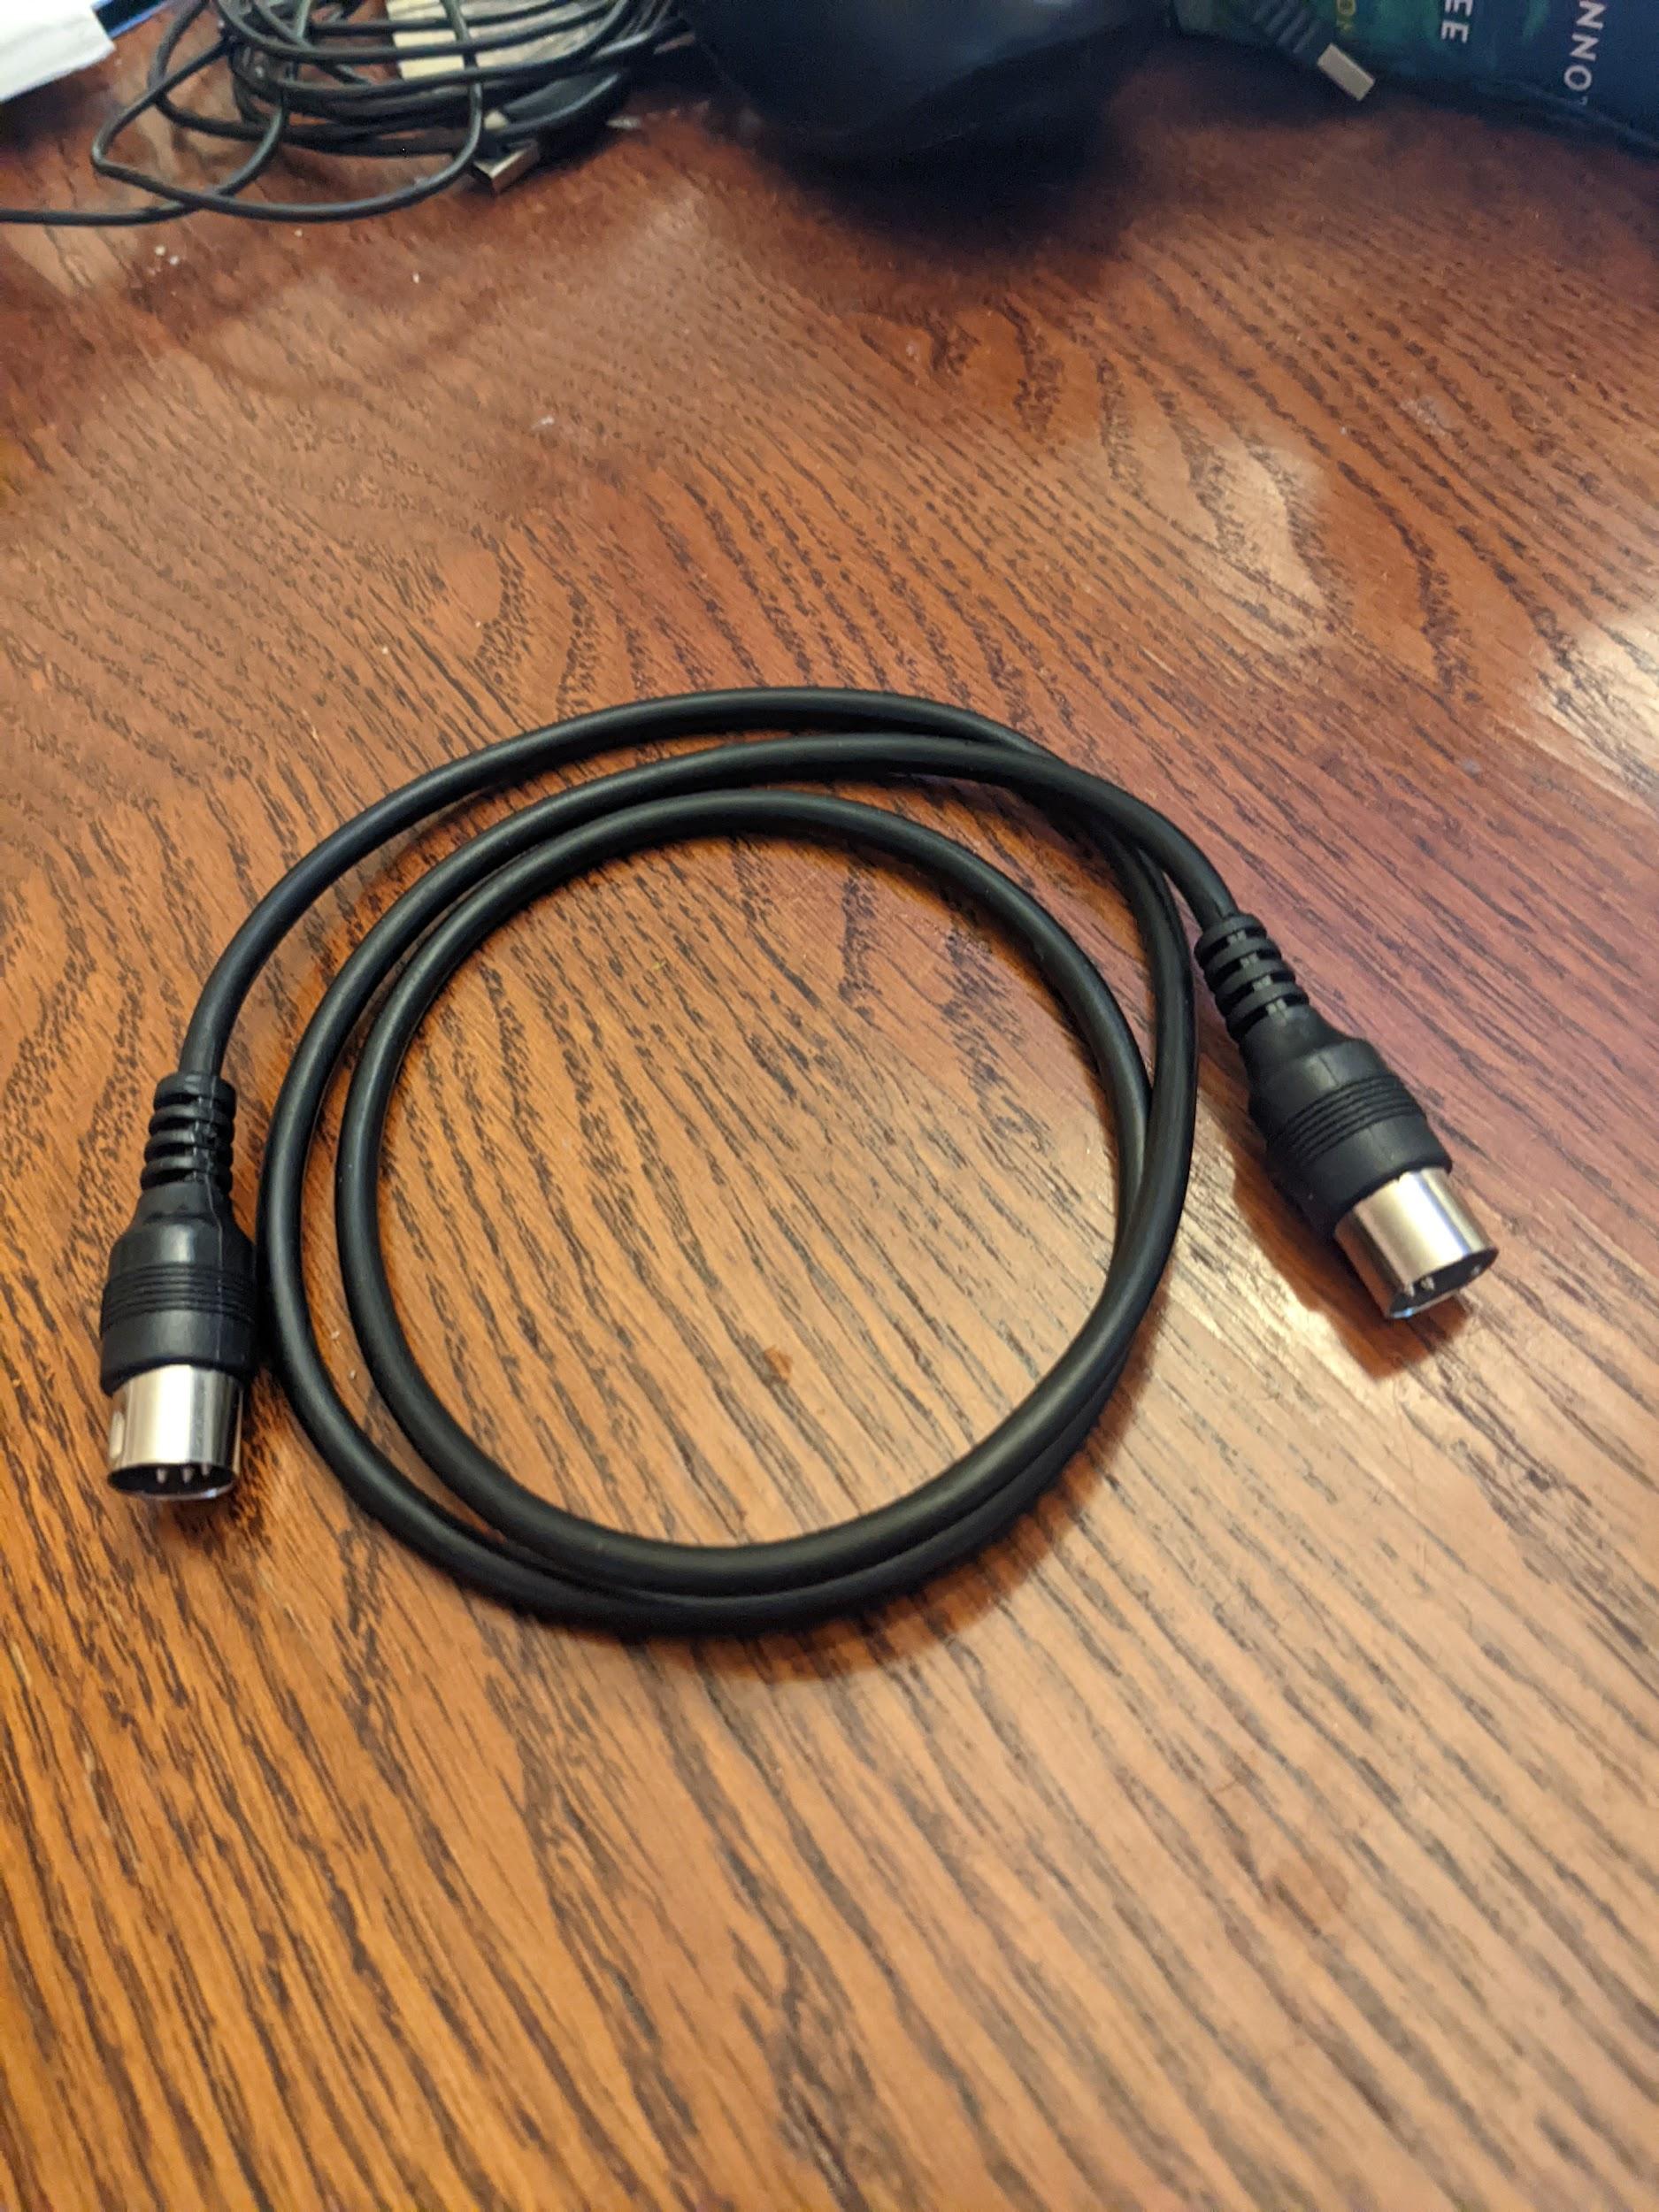 Standard 5-pin DIN MIDI cable